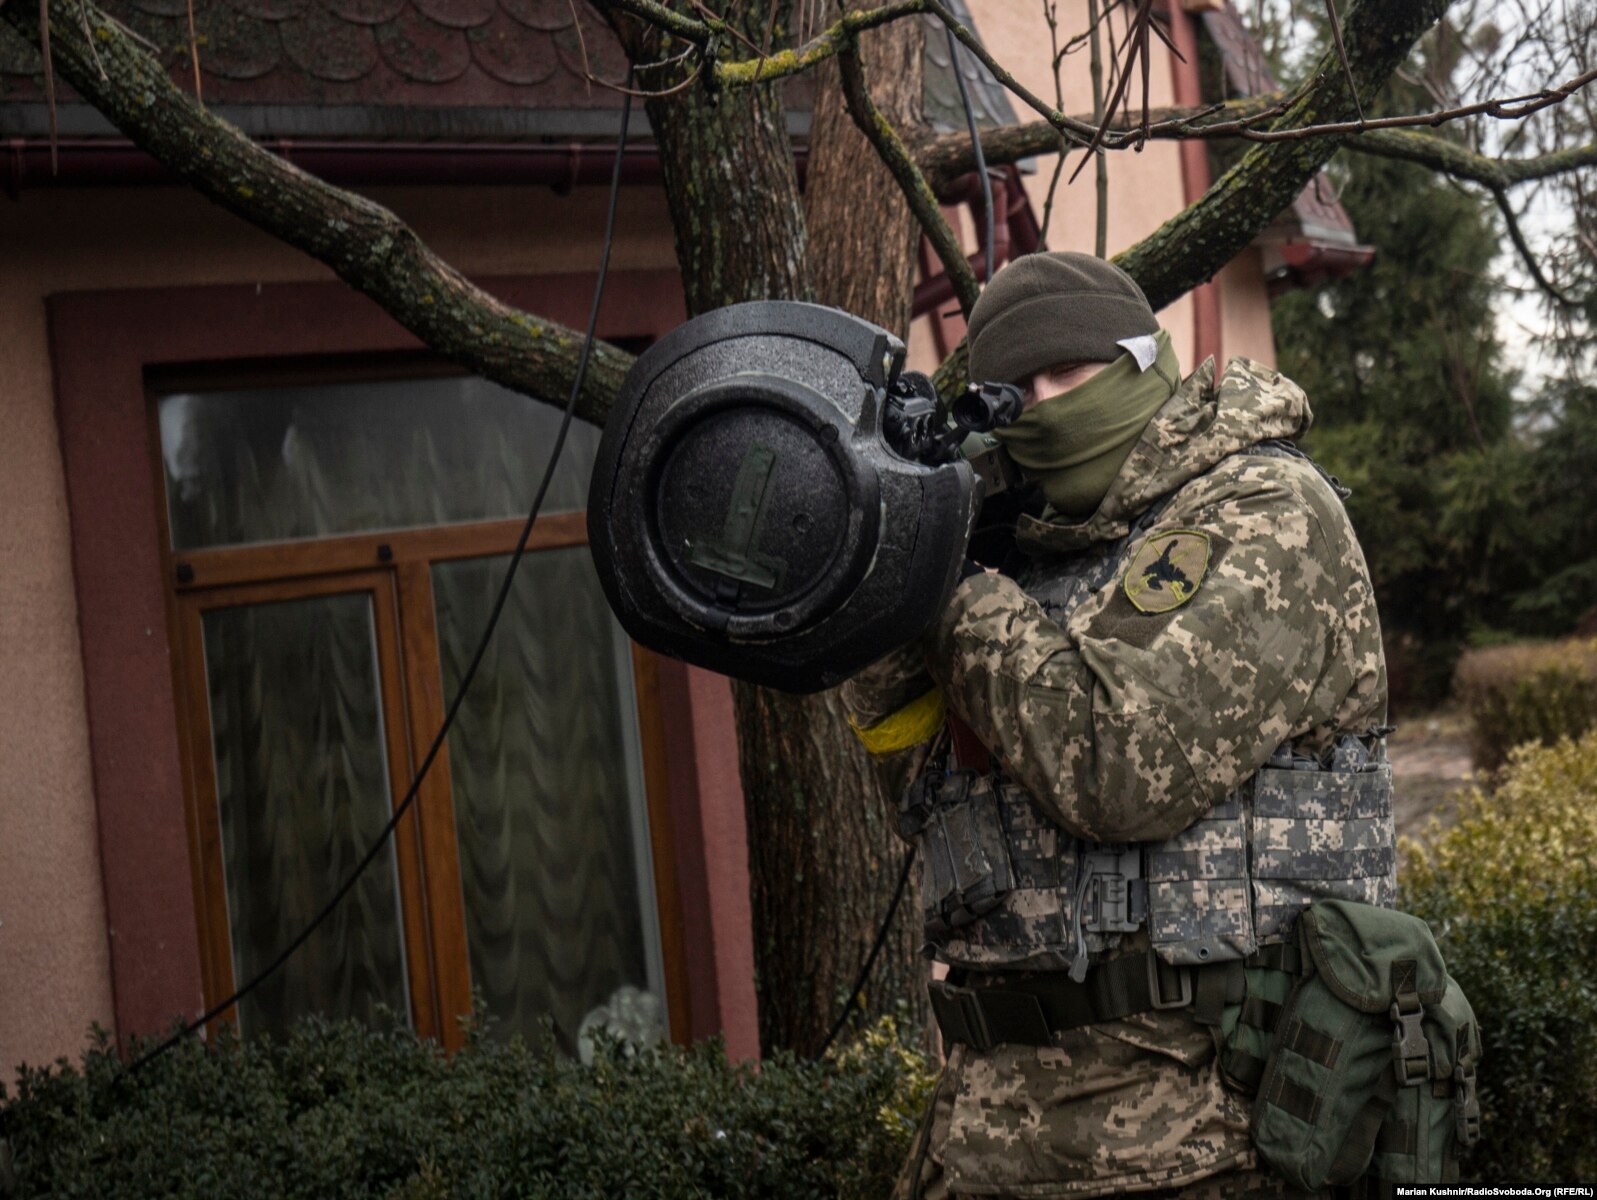 Një ushtar ukrainas me një armë anti-tank në rajonin e Kievit më 4 mars. Fotografi e realizuar nga korrespondenti i REL-it, Marian Kushnir.